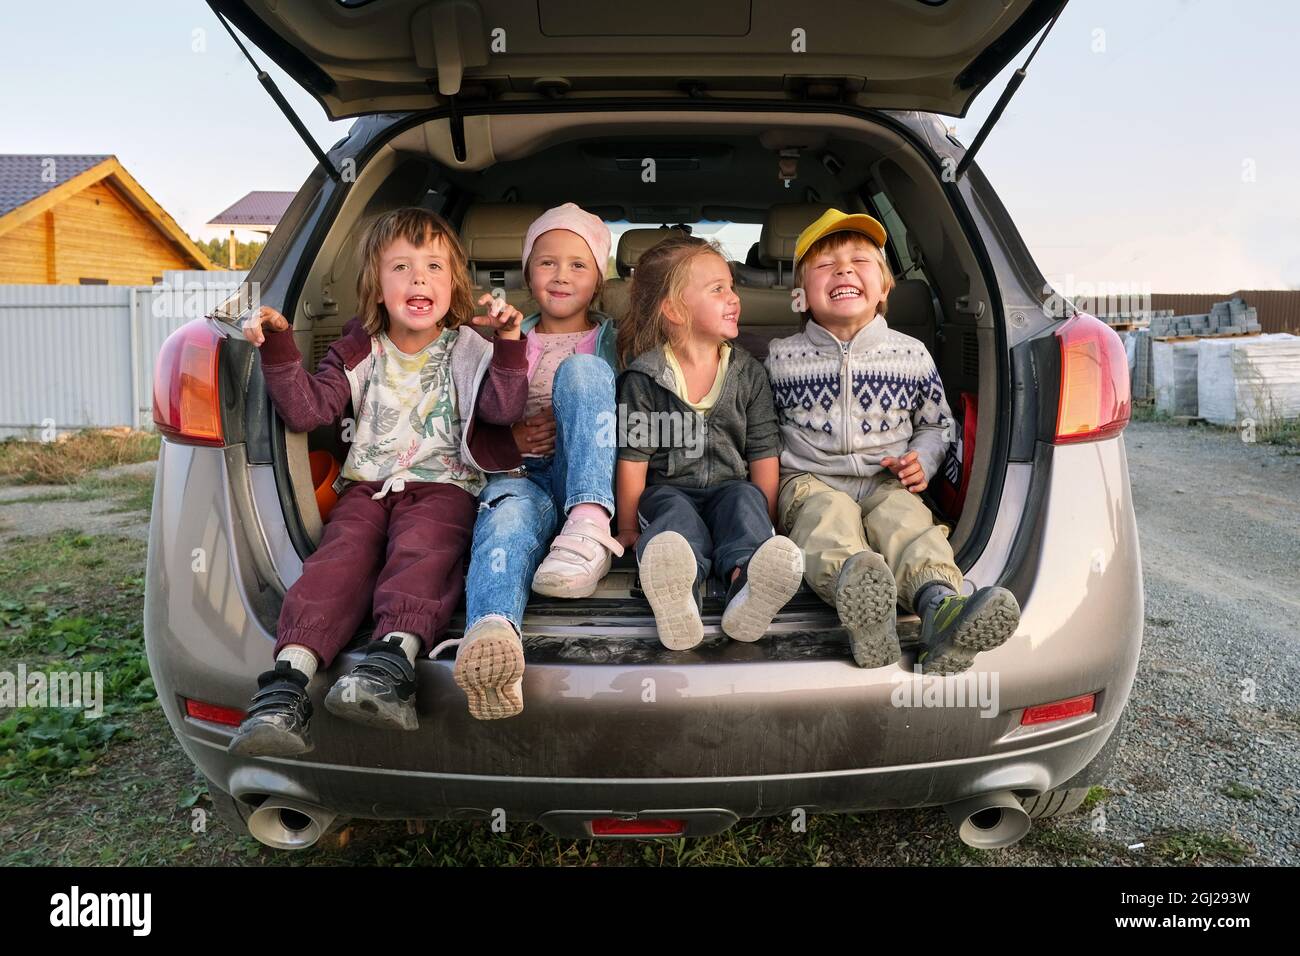 Los niños felices en ropa casual se ríen mientras están sentados en el maletero de automóvil estacionado en la carretera en el campo Foto de stock